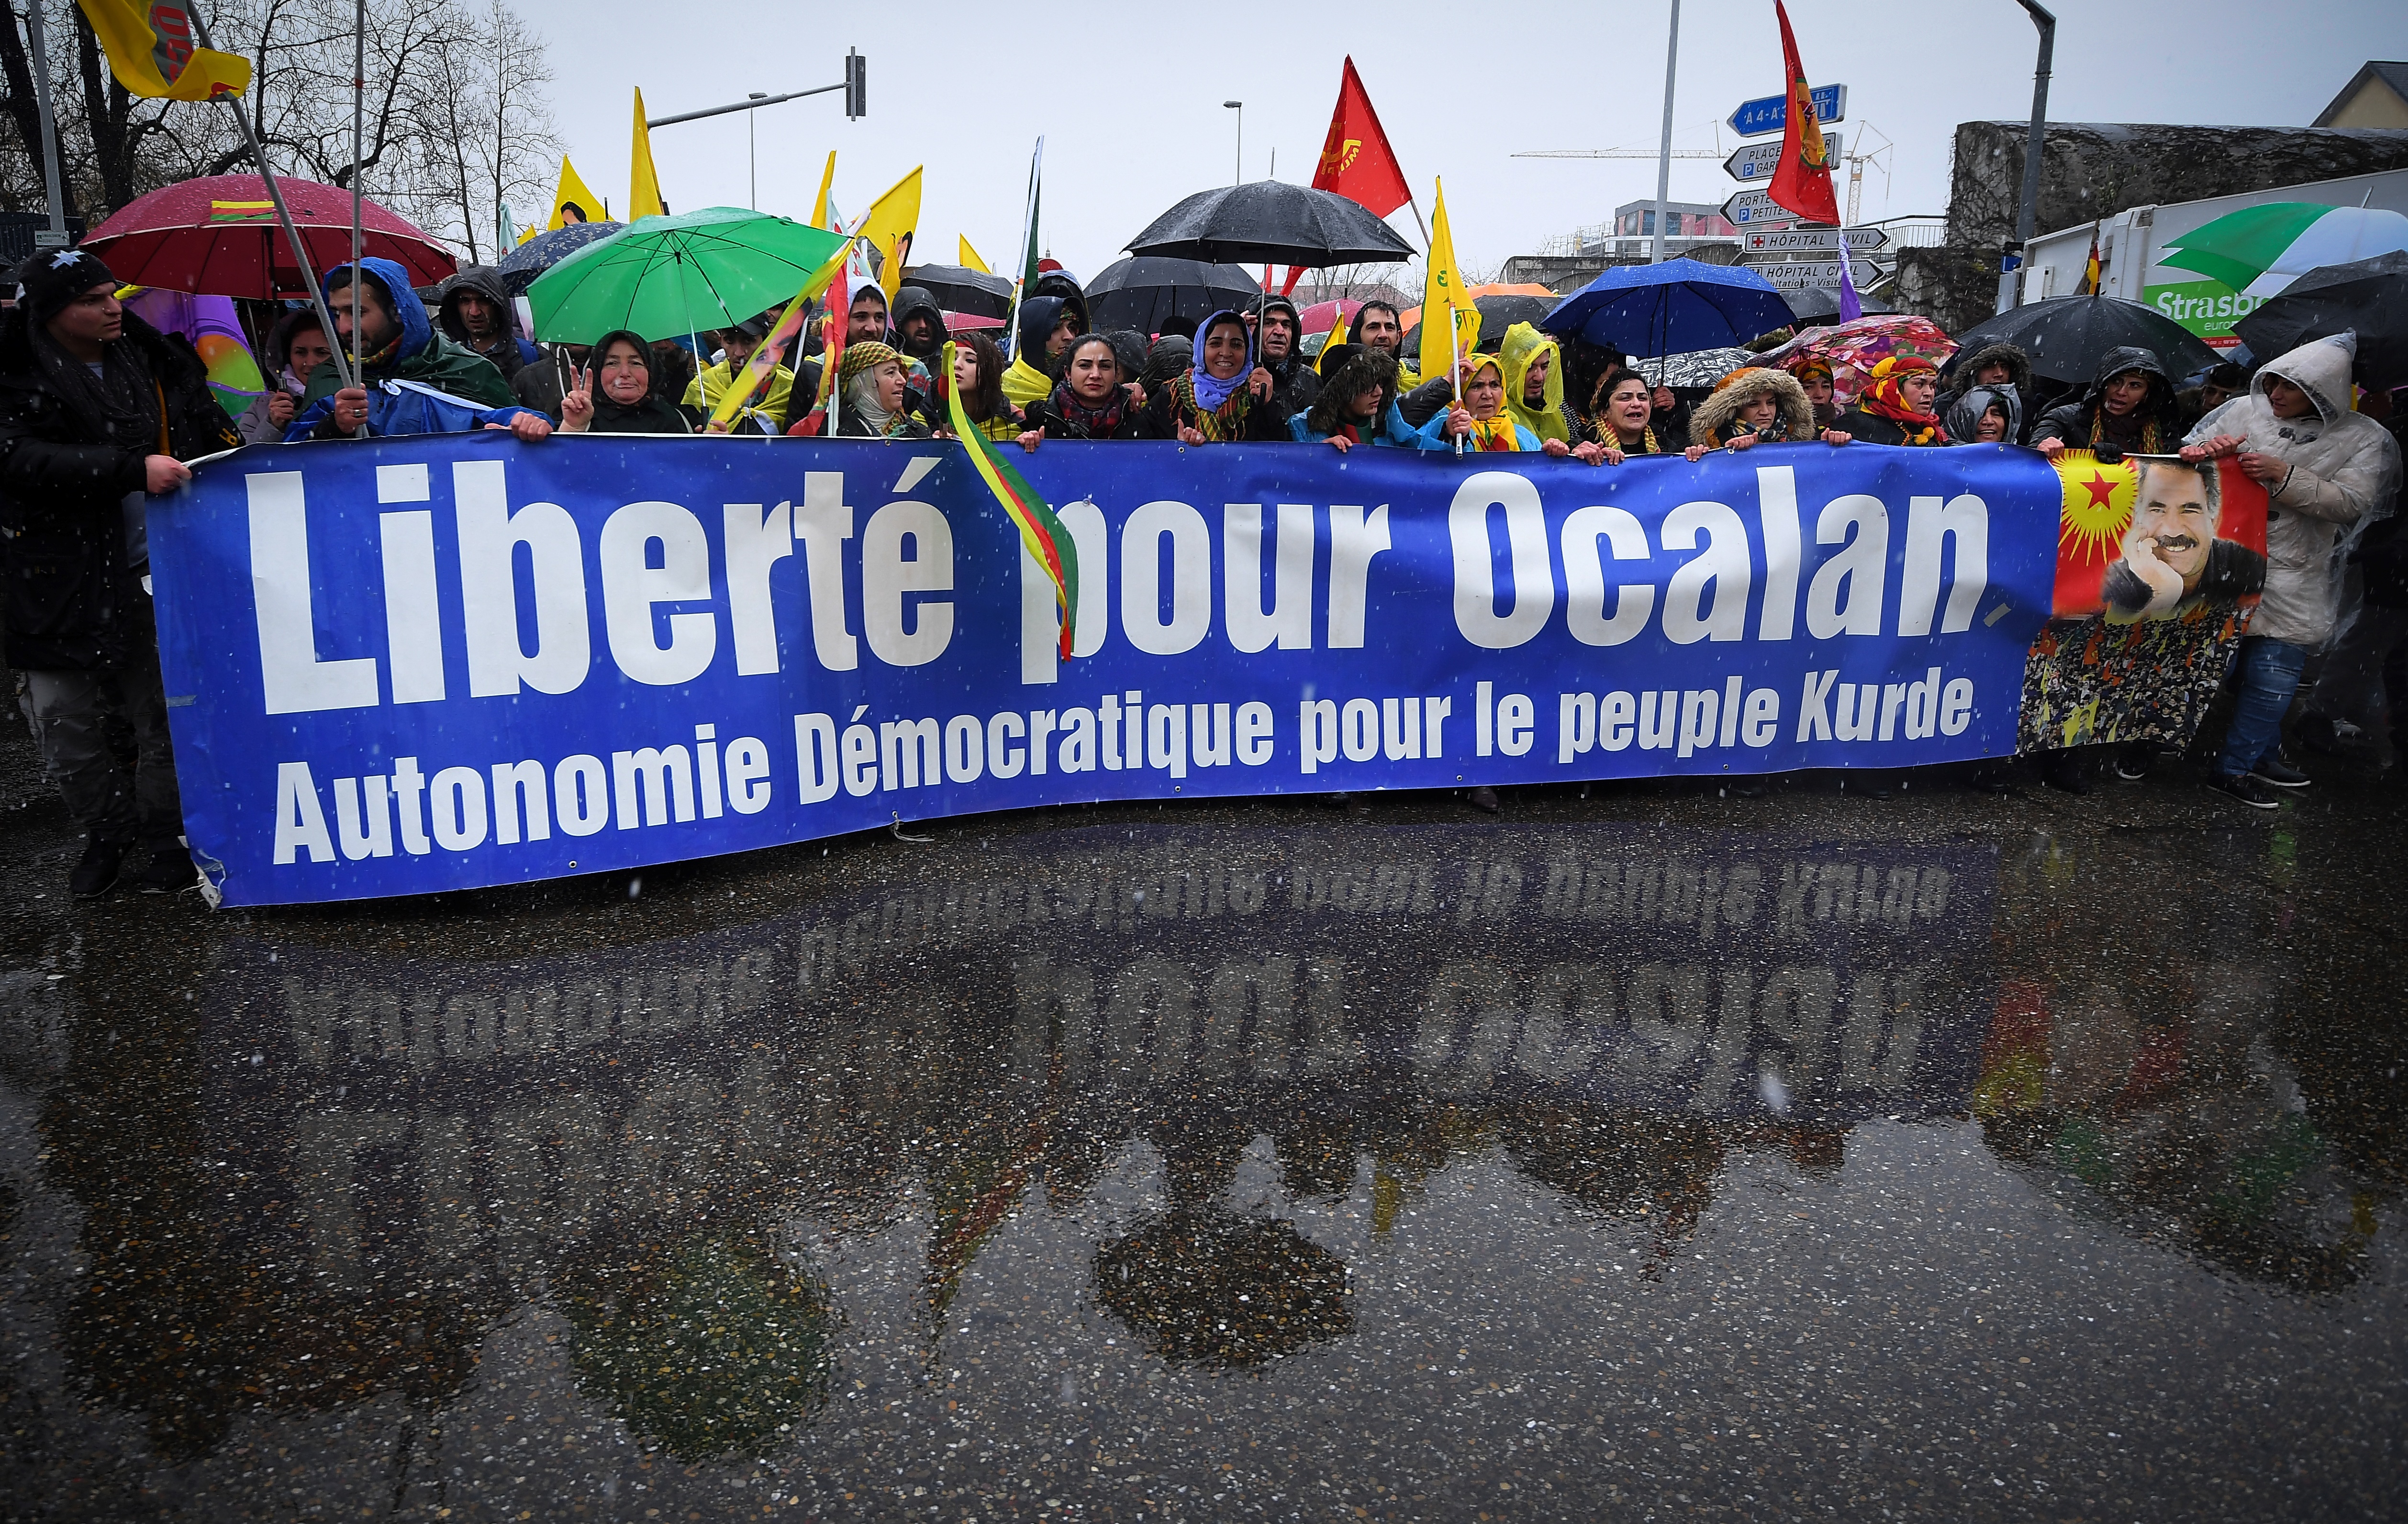 Több mint 10 ezer kurd tüntetett Strasbourgban, hogy engedjék el az 1999-ben bebörtönzött Abdullah Öcalant